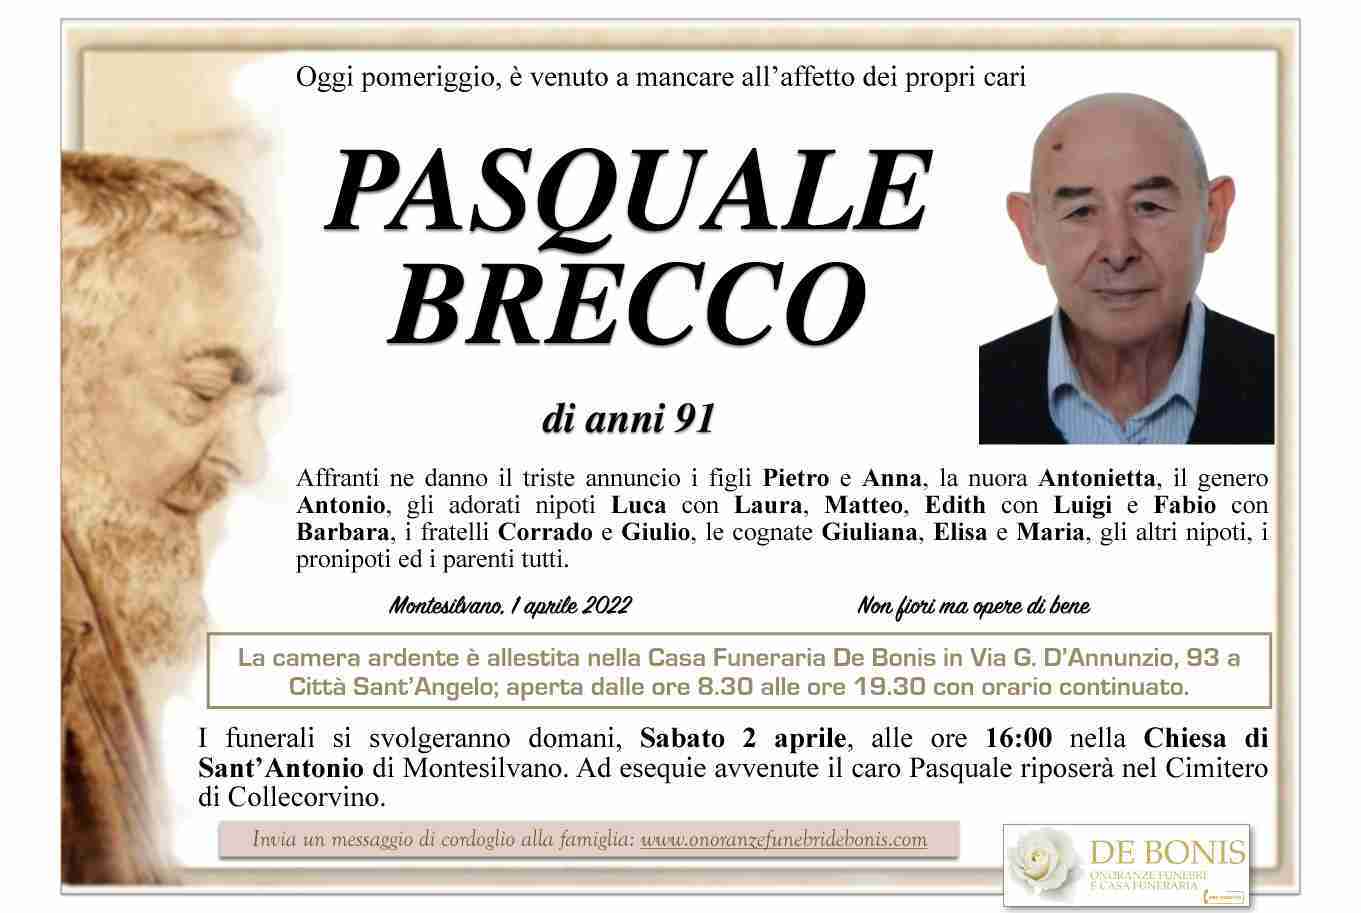 Pasquale Brecco